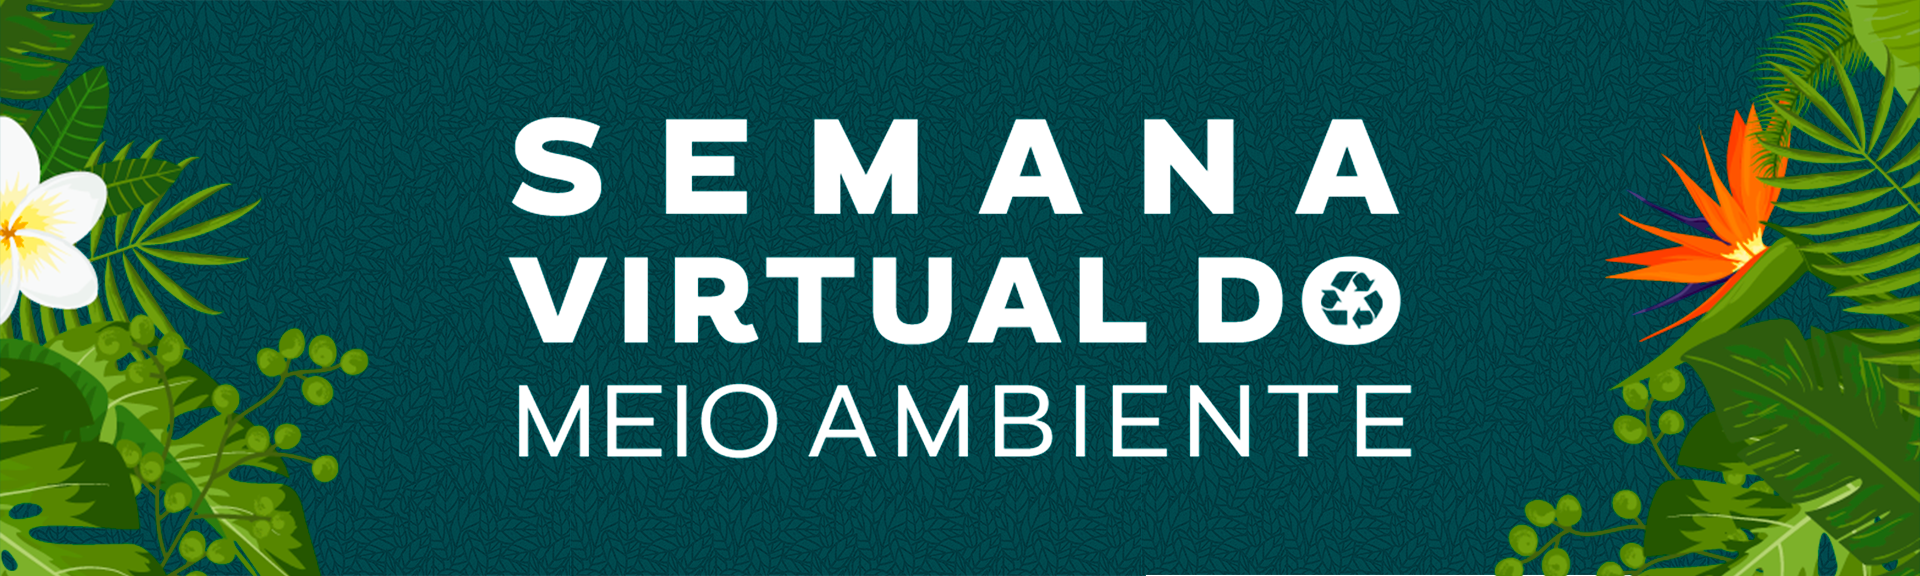 Semana Virtual do Meio Ambiente Globo PlayerUm